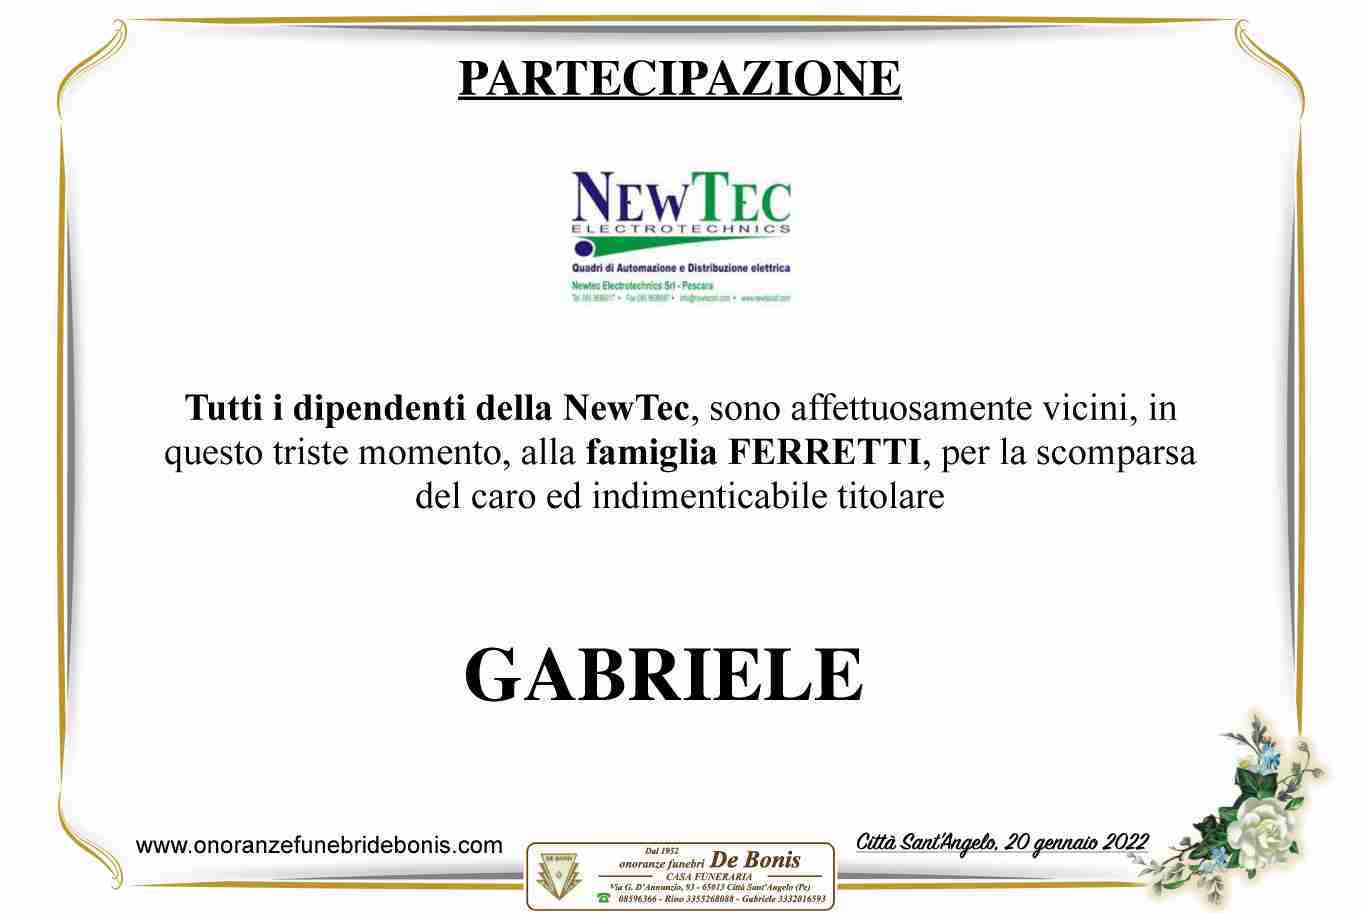 Gabriele Ferretti